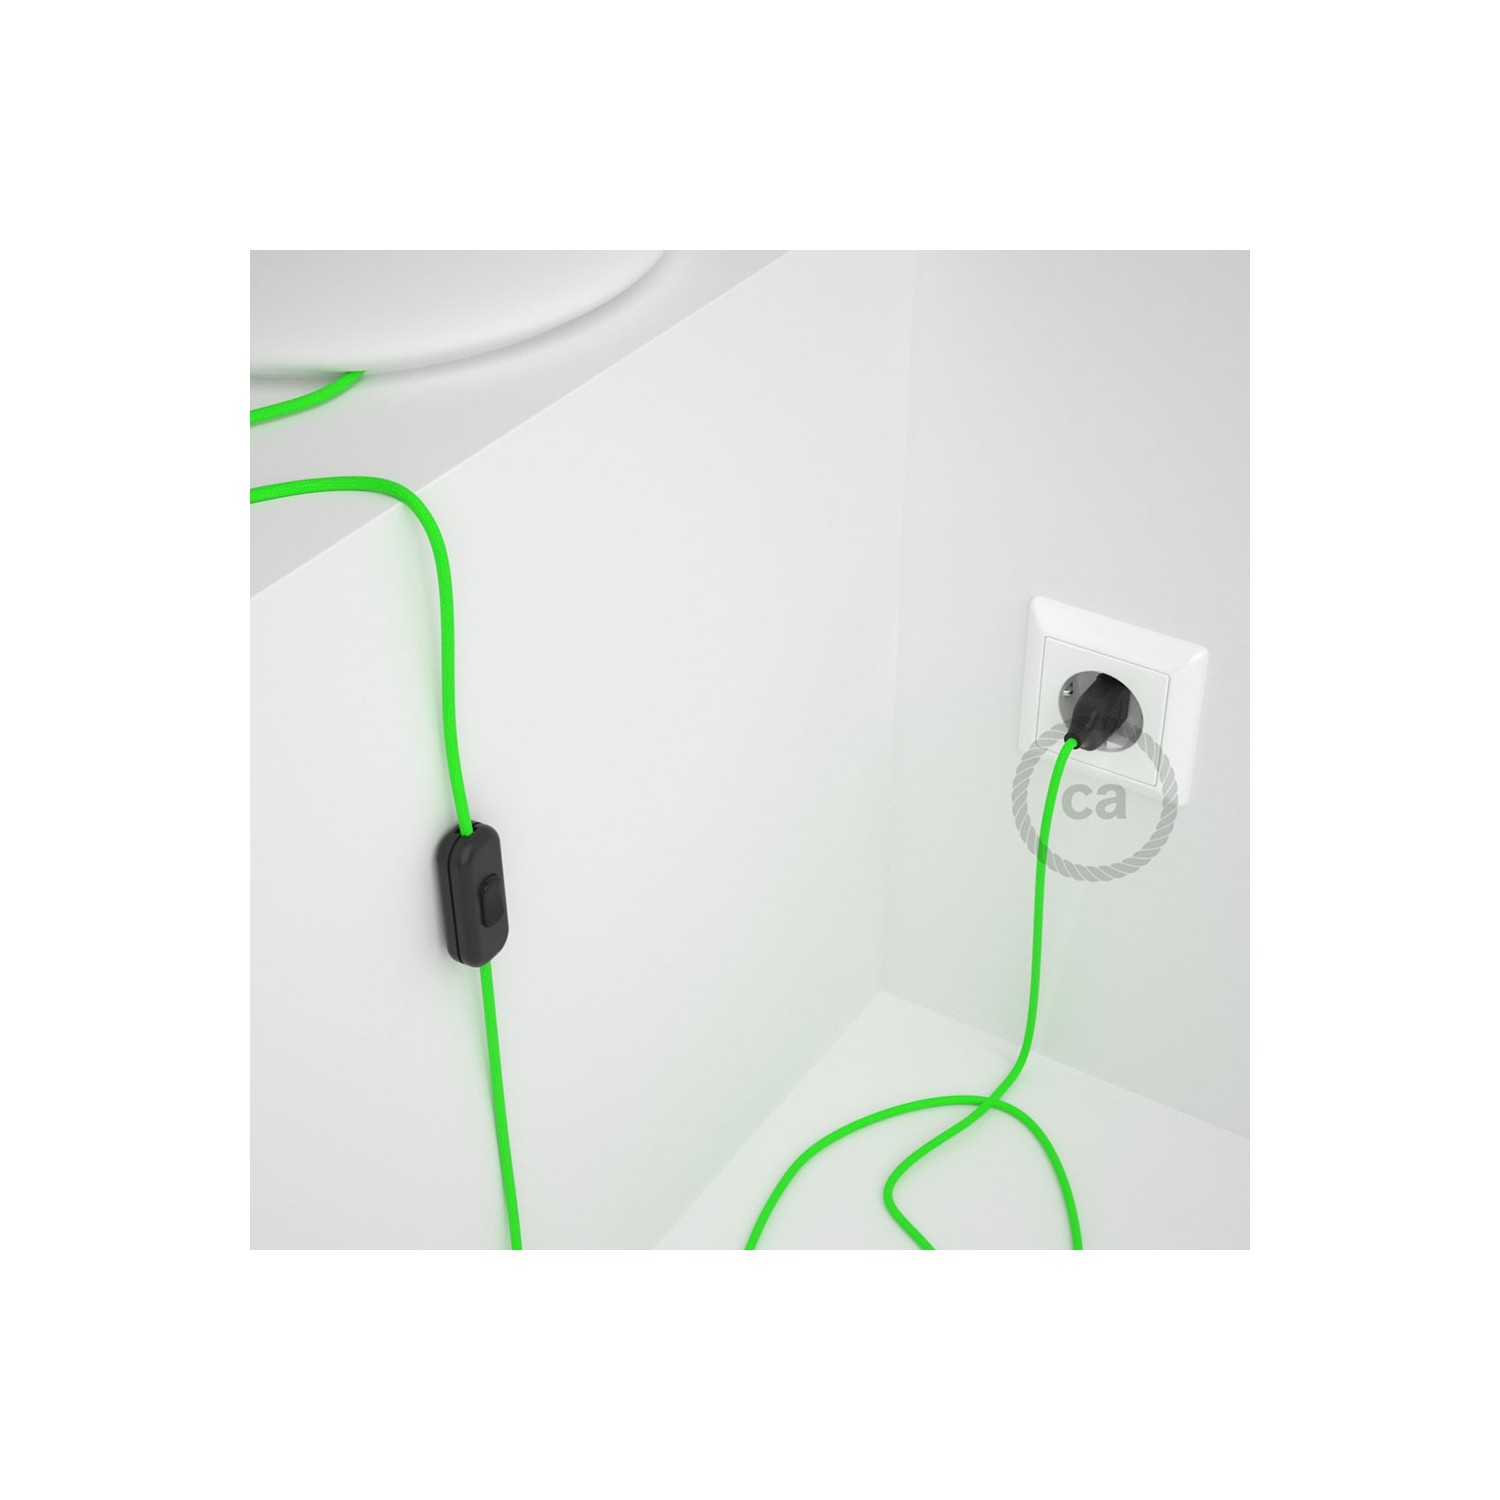 Sladdställ, RF06 Grön Neon Viskos 1,80 m. Välj färg på strömbrytare och kontakt